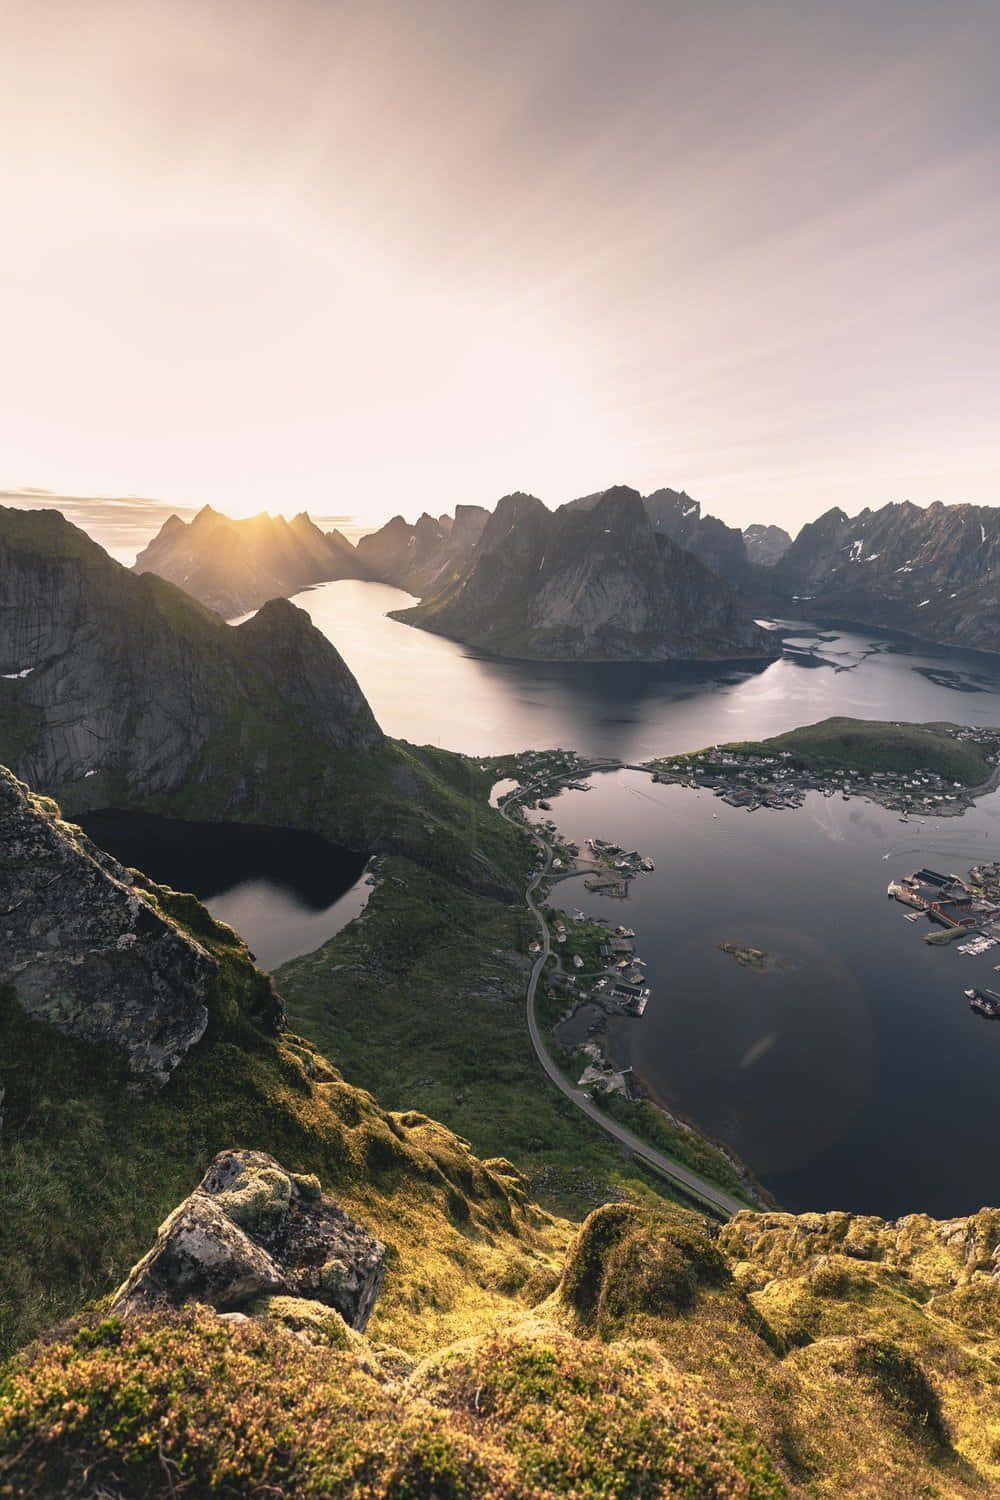 Endimmig Underland: Utforska Norges Västra Fjordar